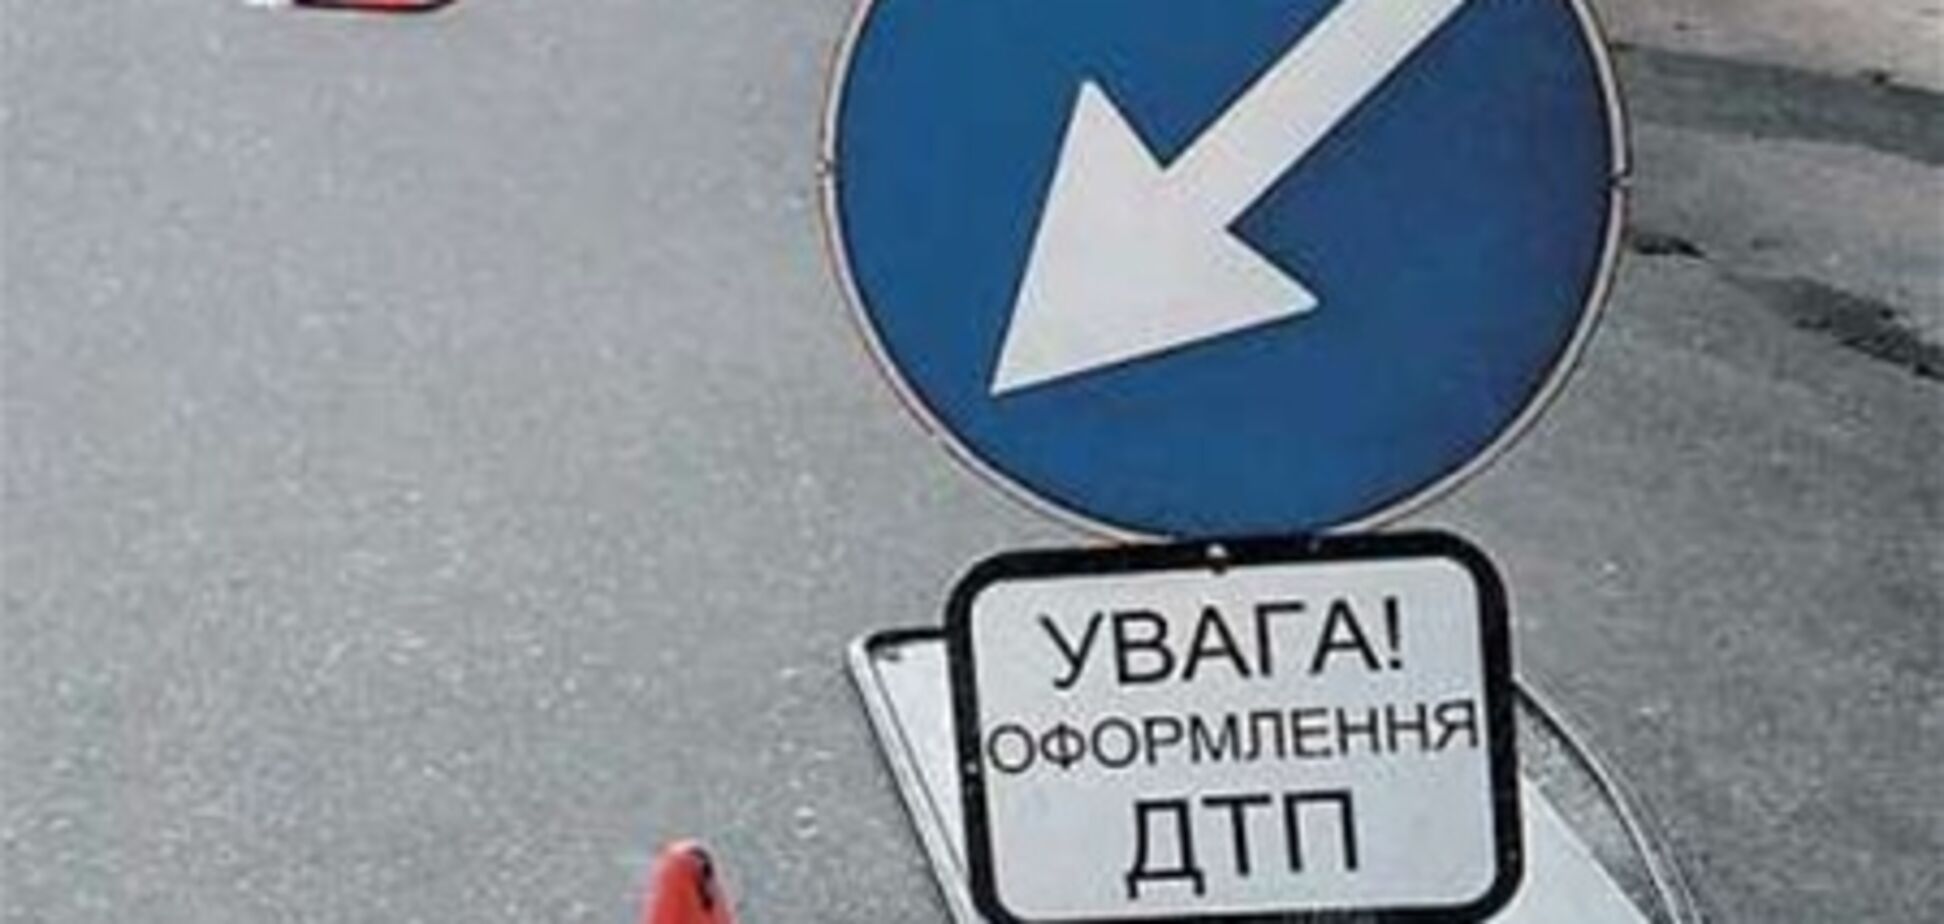 Украинцы теперь смогут оформлять ДТП за рубежом без полиции